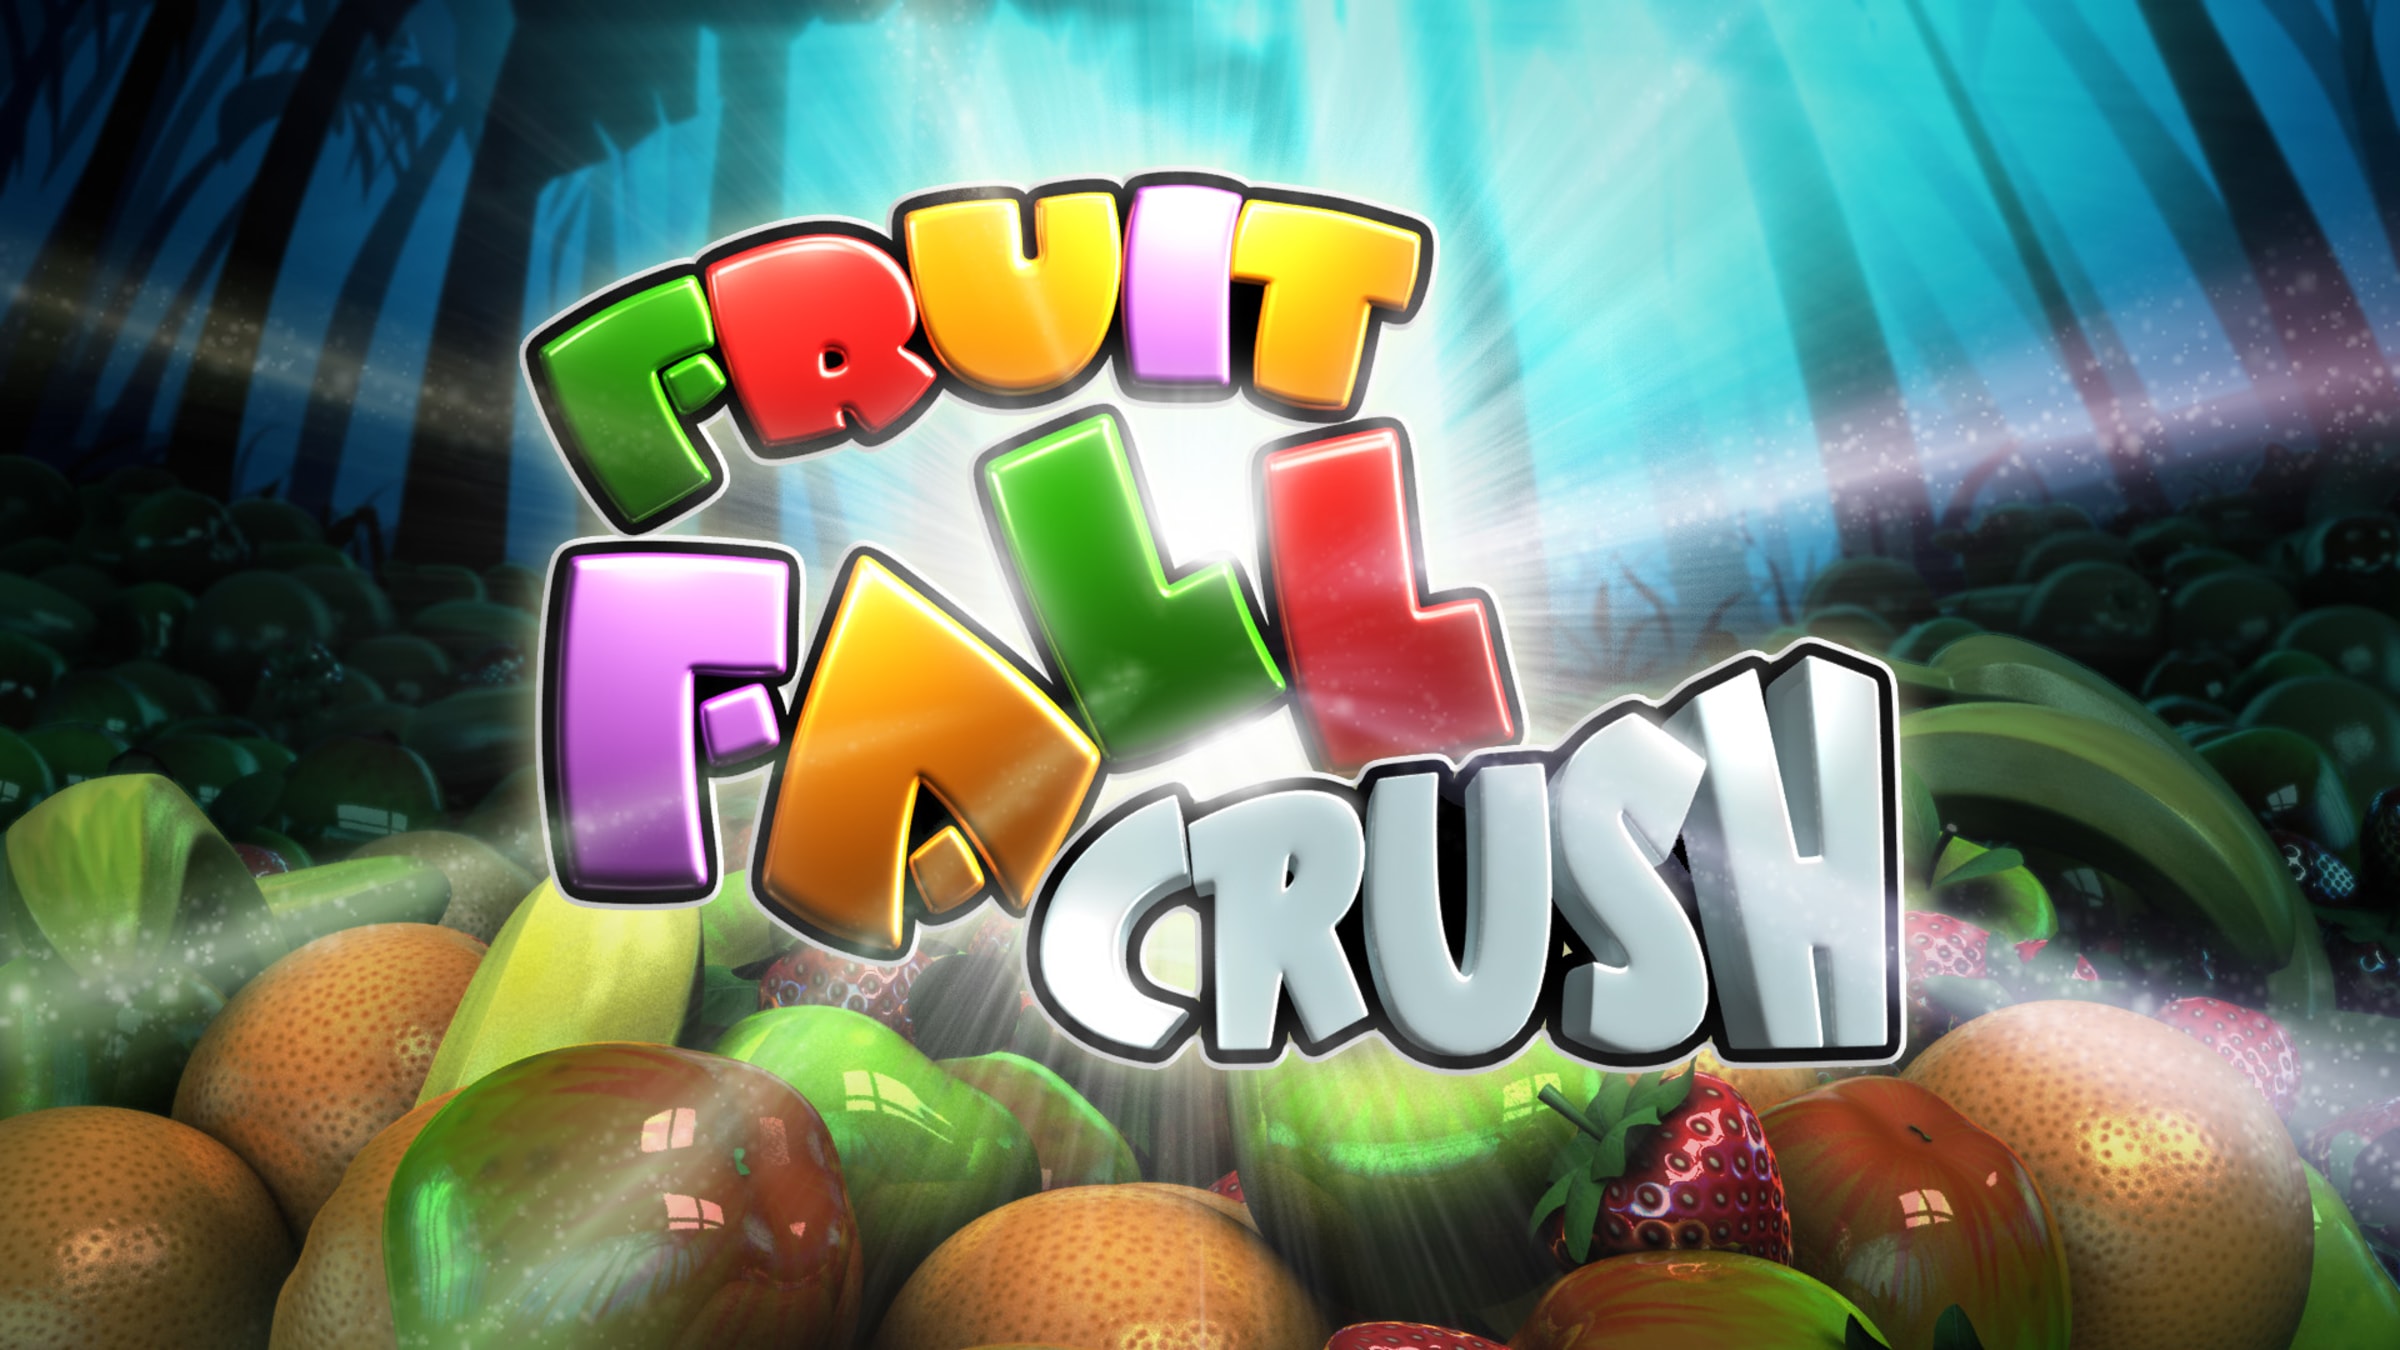 Fruita Crush - 🕹️ Online Game